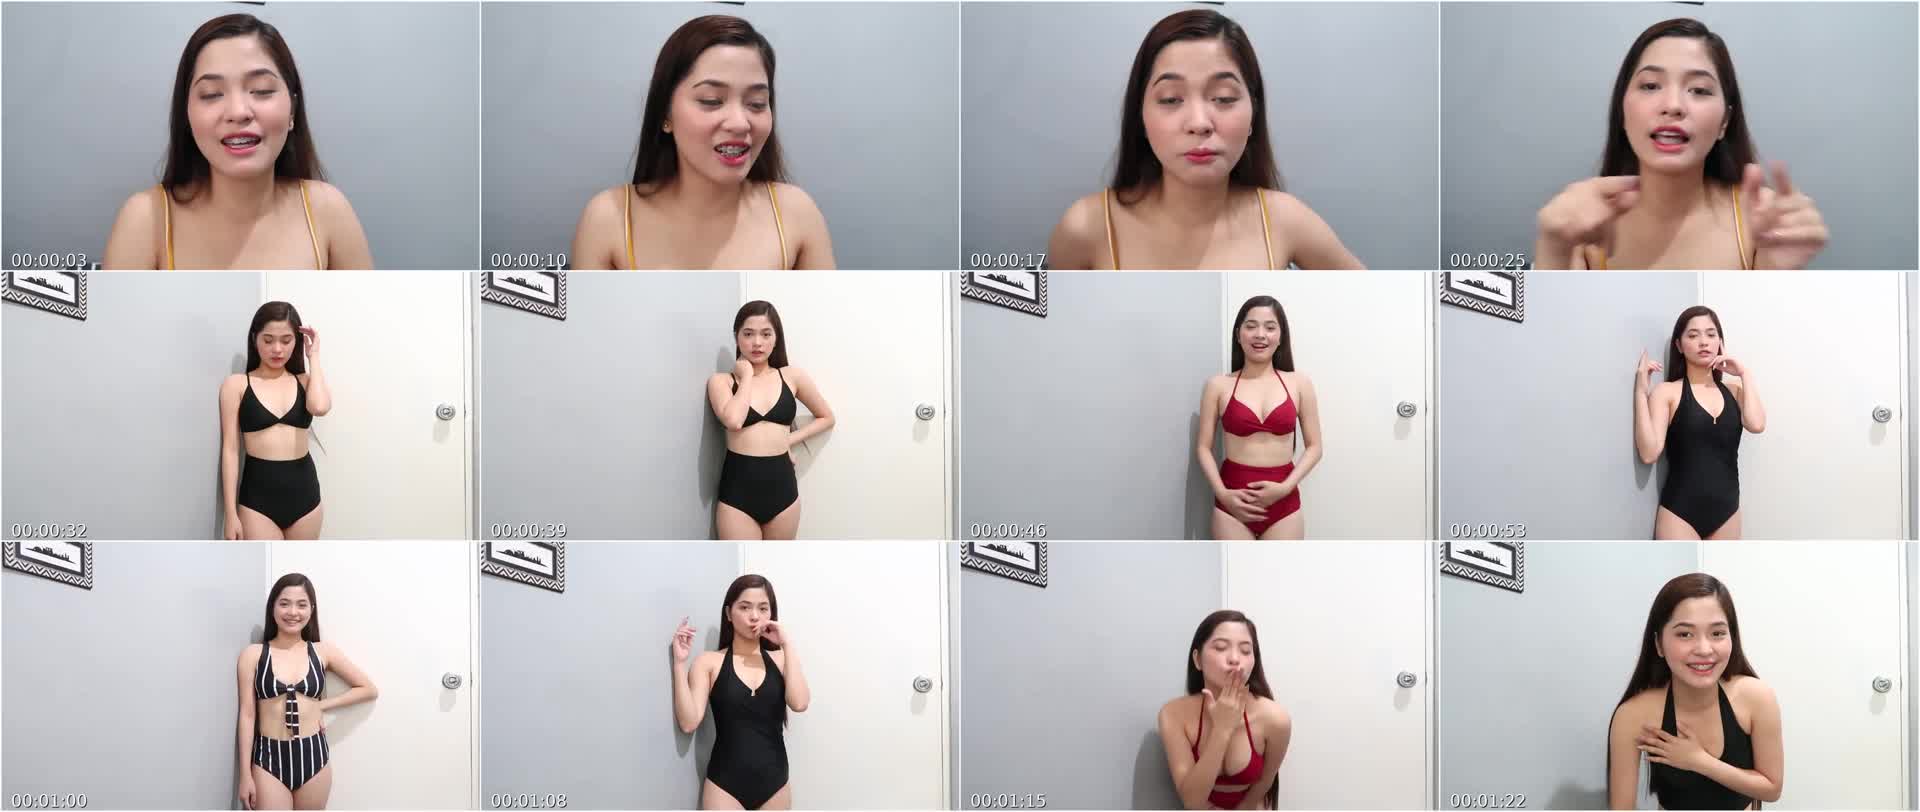 Kristy Halili Tinesting Ang Biniling Bikini Para iSend Kay Boyfie